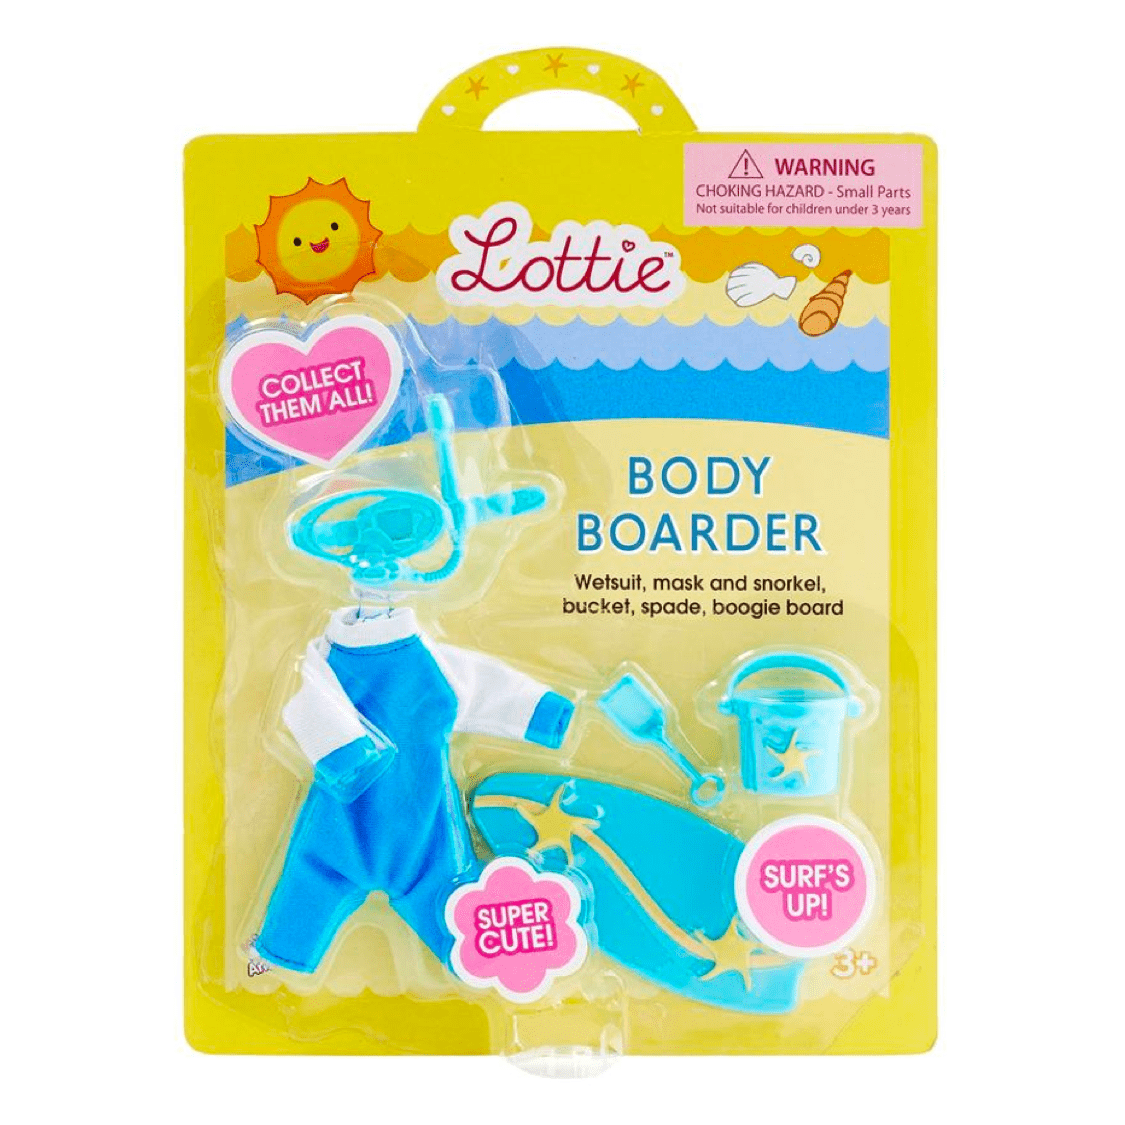 Lottie: Boogie Body Boarder